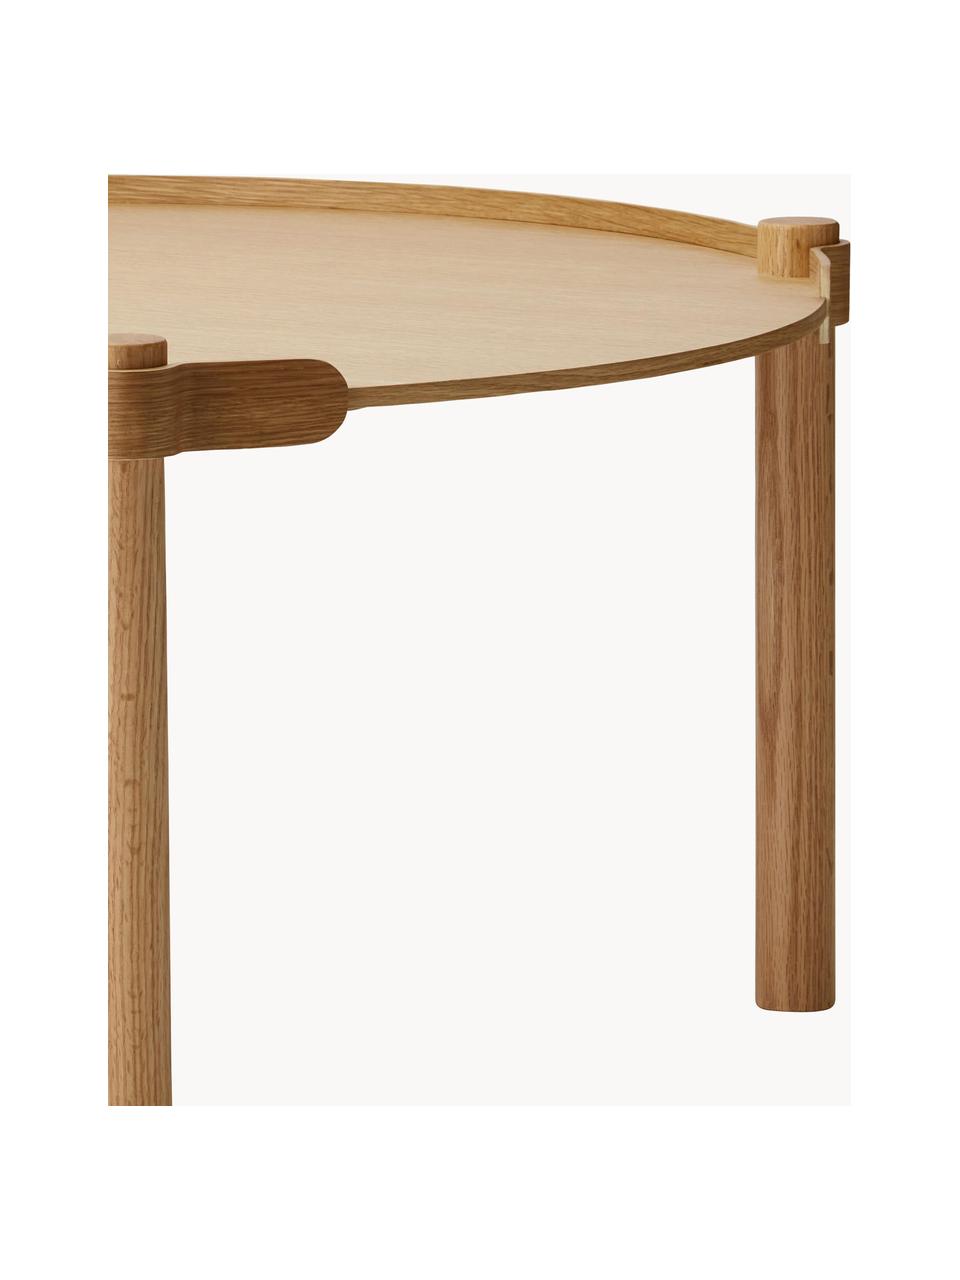 Table d'appoint ovale en bois de chêne Woody, Bois de chêne

Ce produit est fabriqué à partir de bois certifié FSC® et issu d'une exploitation durable, Bois de chêne, Ø 80 cm